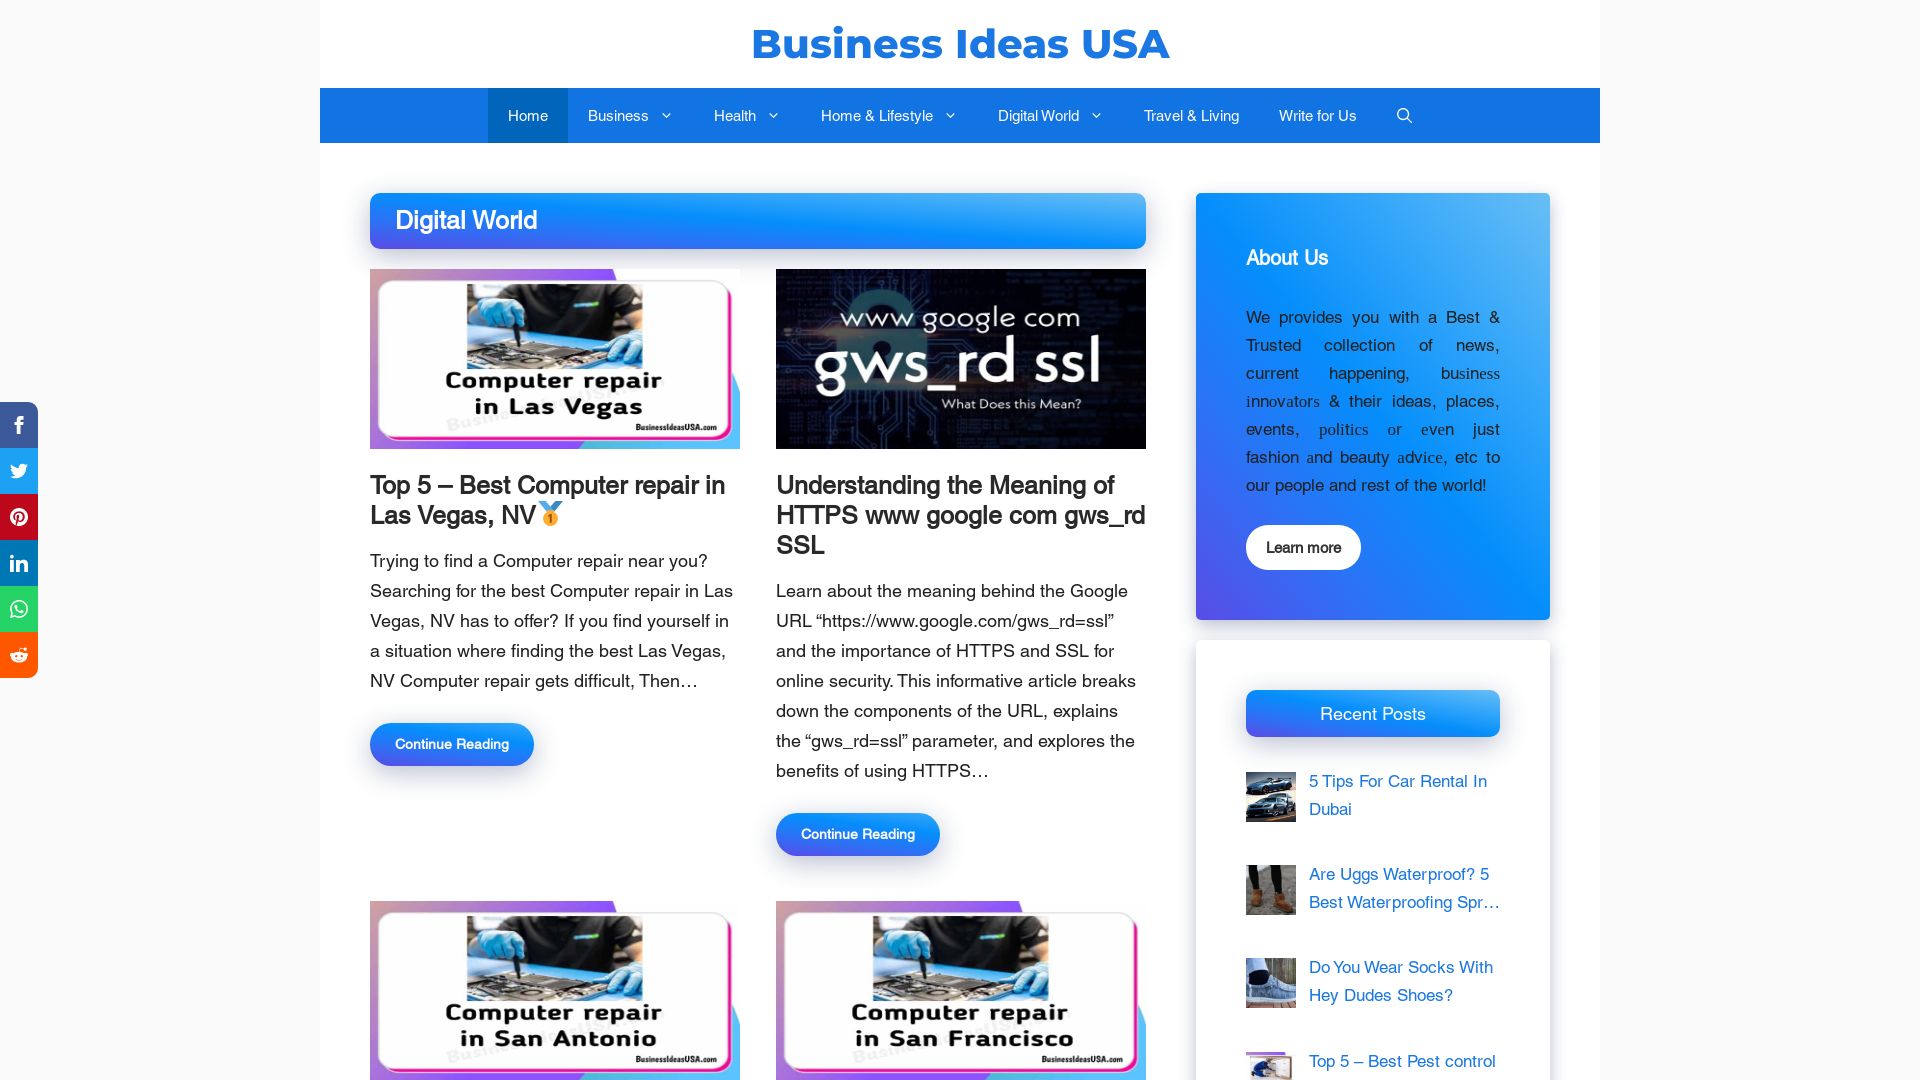 Estado web businessideasusa.com está   ONLINE